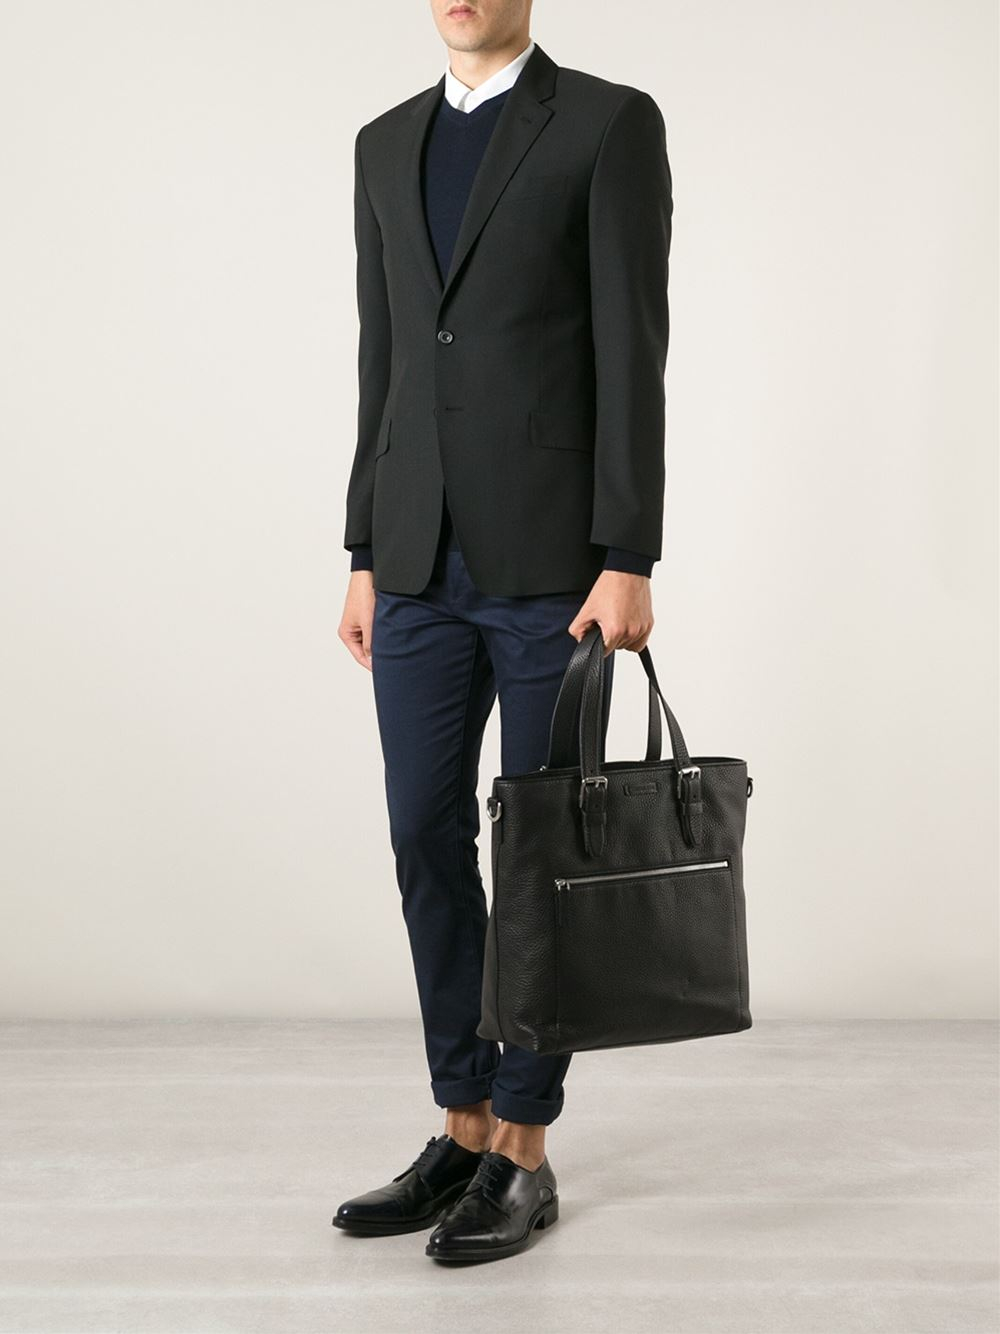 Lyst - Michael Kors 'Bryant' Tote Bag in Black for Men